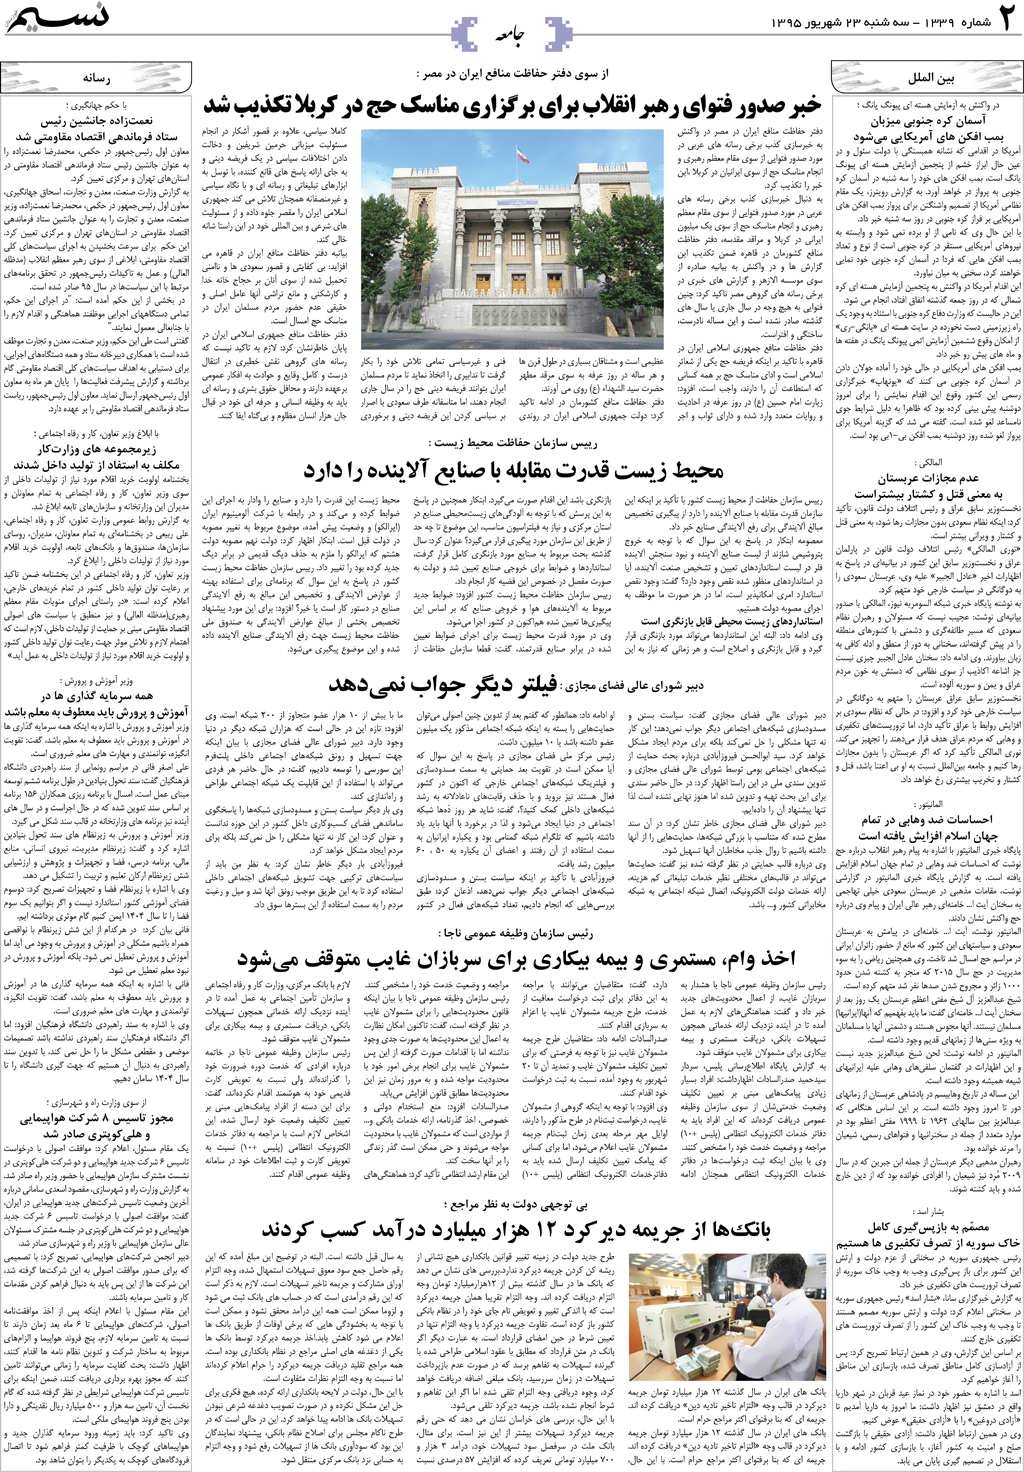 صفحه جامعه روزنامه نسیم شماره 1339